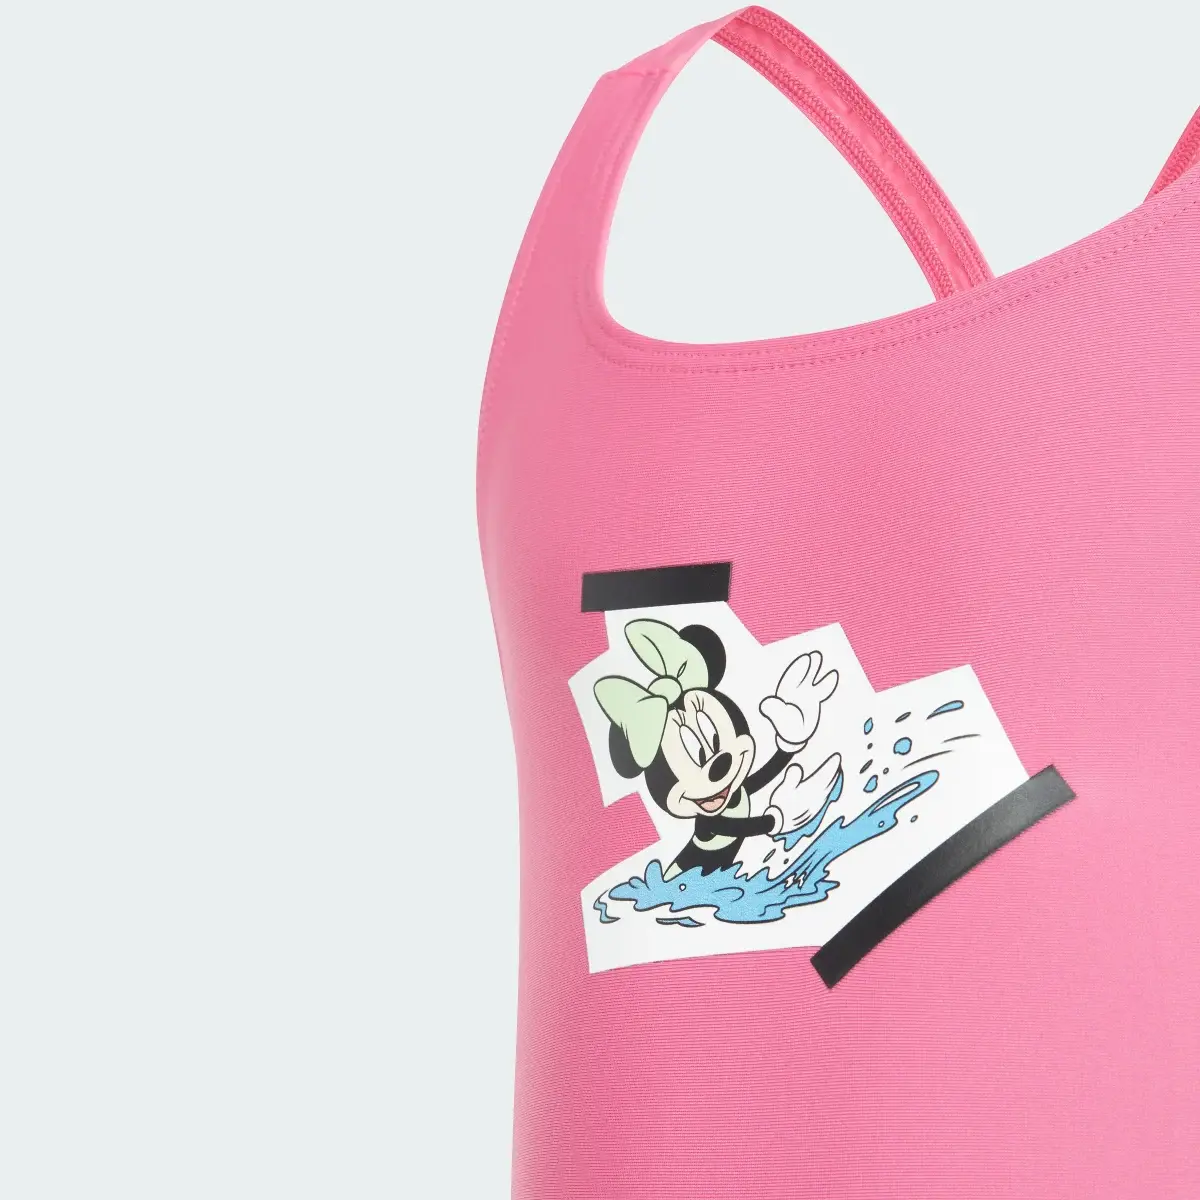 Adidas Strój do pływania adidas x Disney Minnie Mouse 3 Stripes. 3